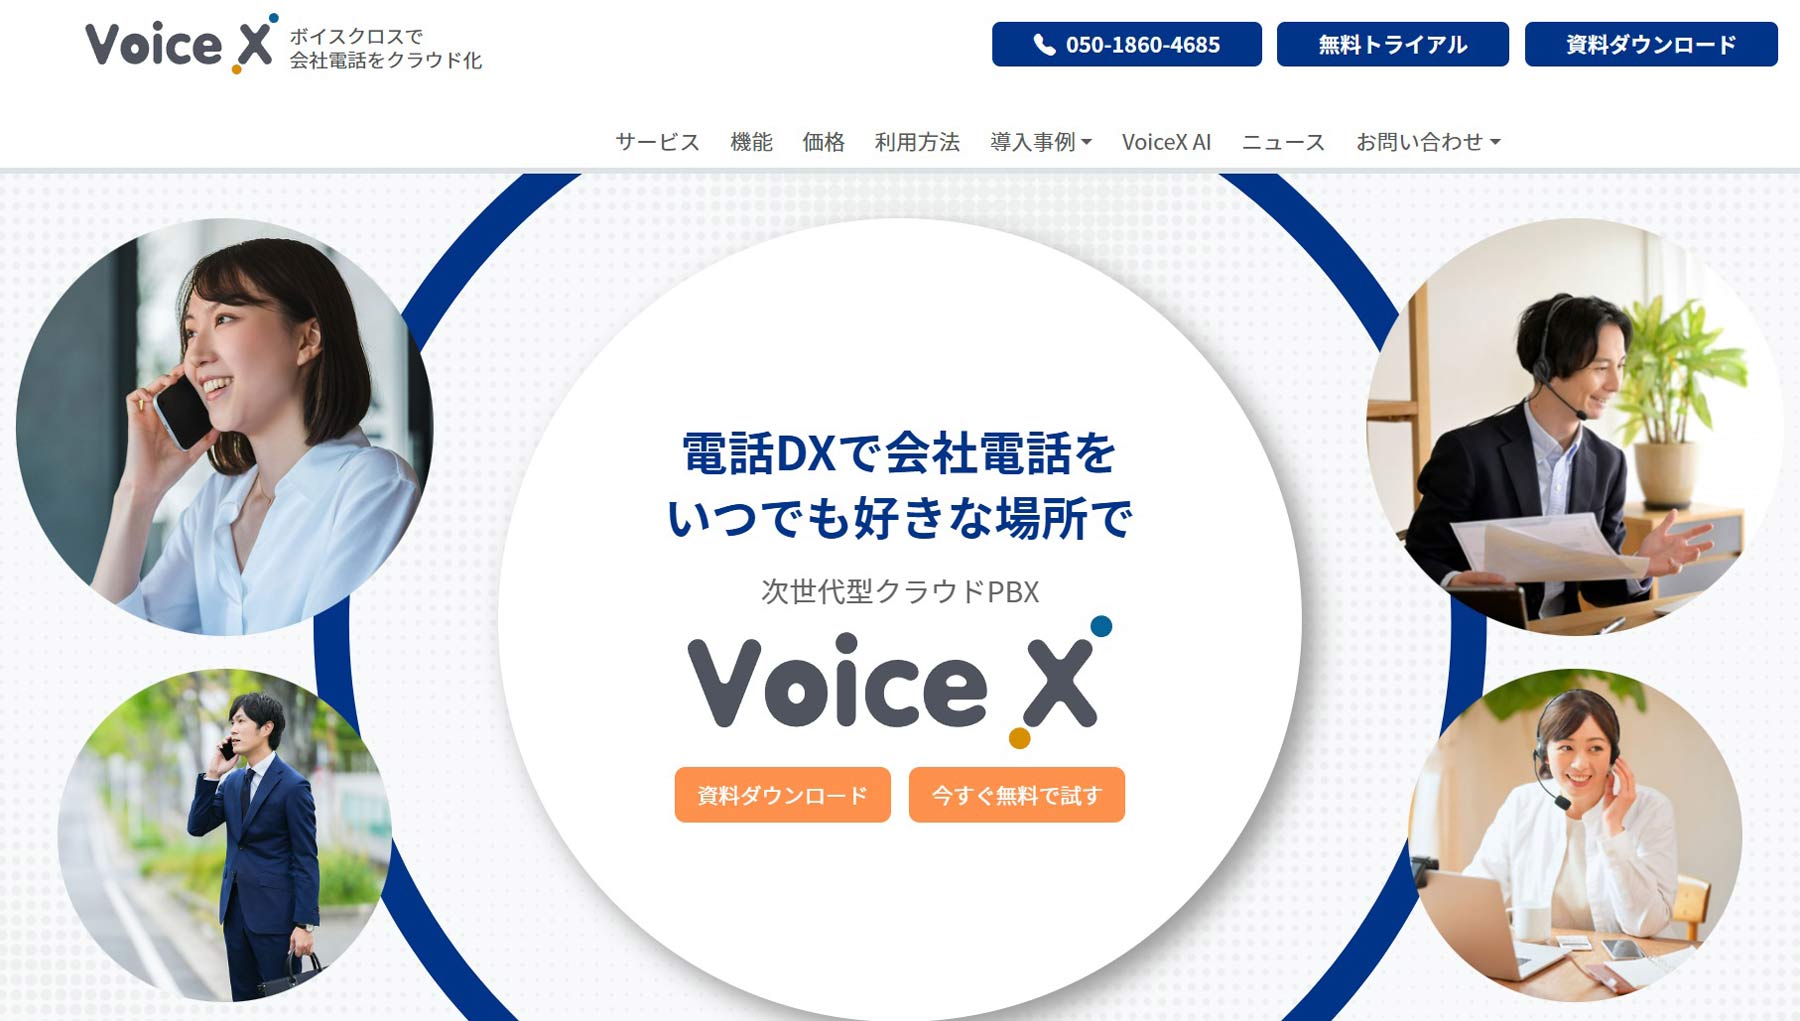 Voice X（株式会社コムスクエア）